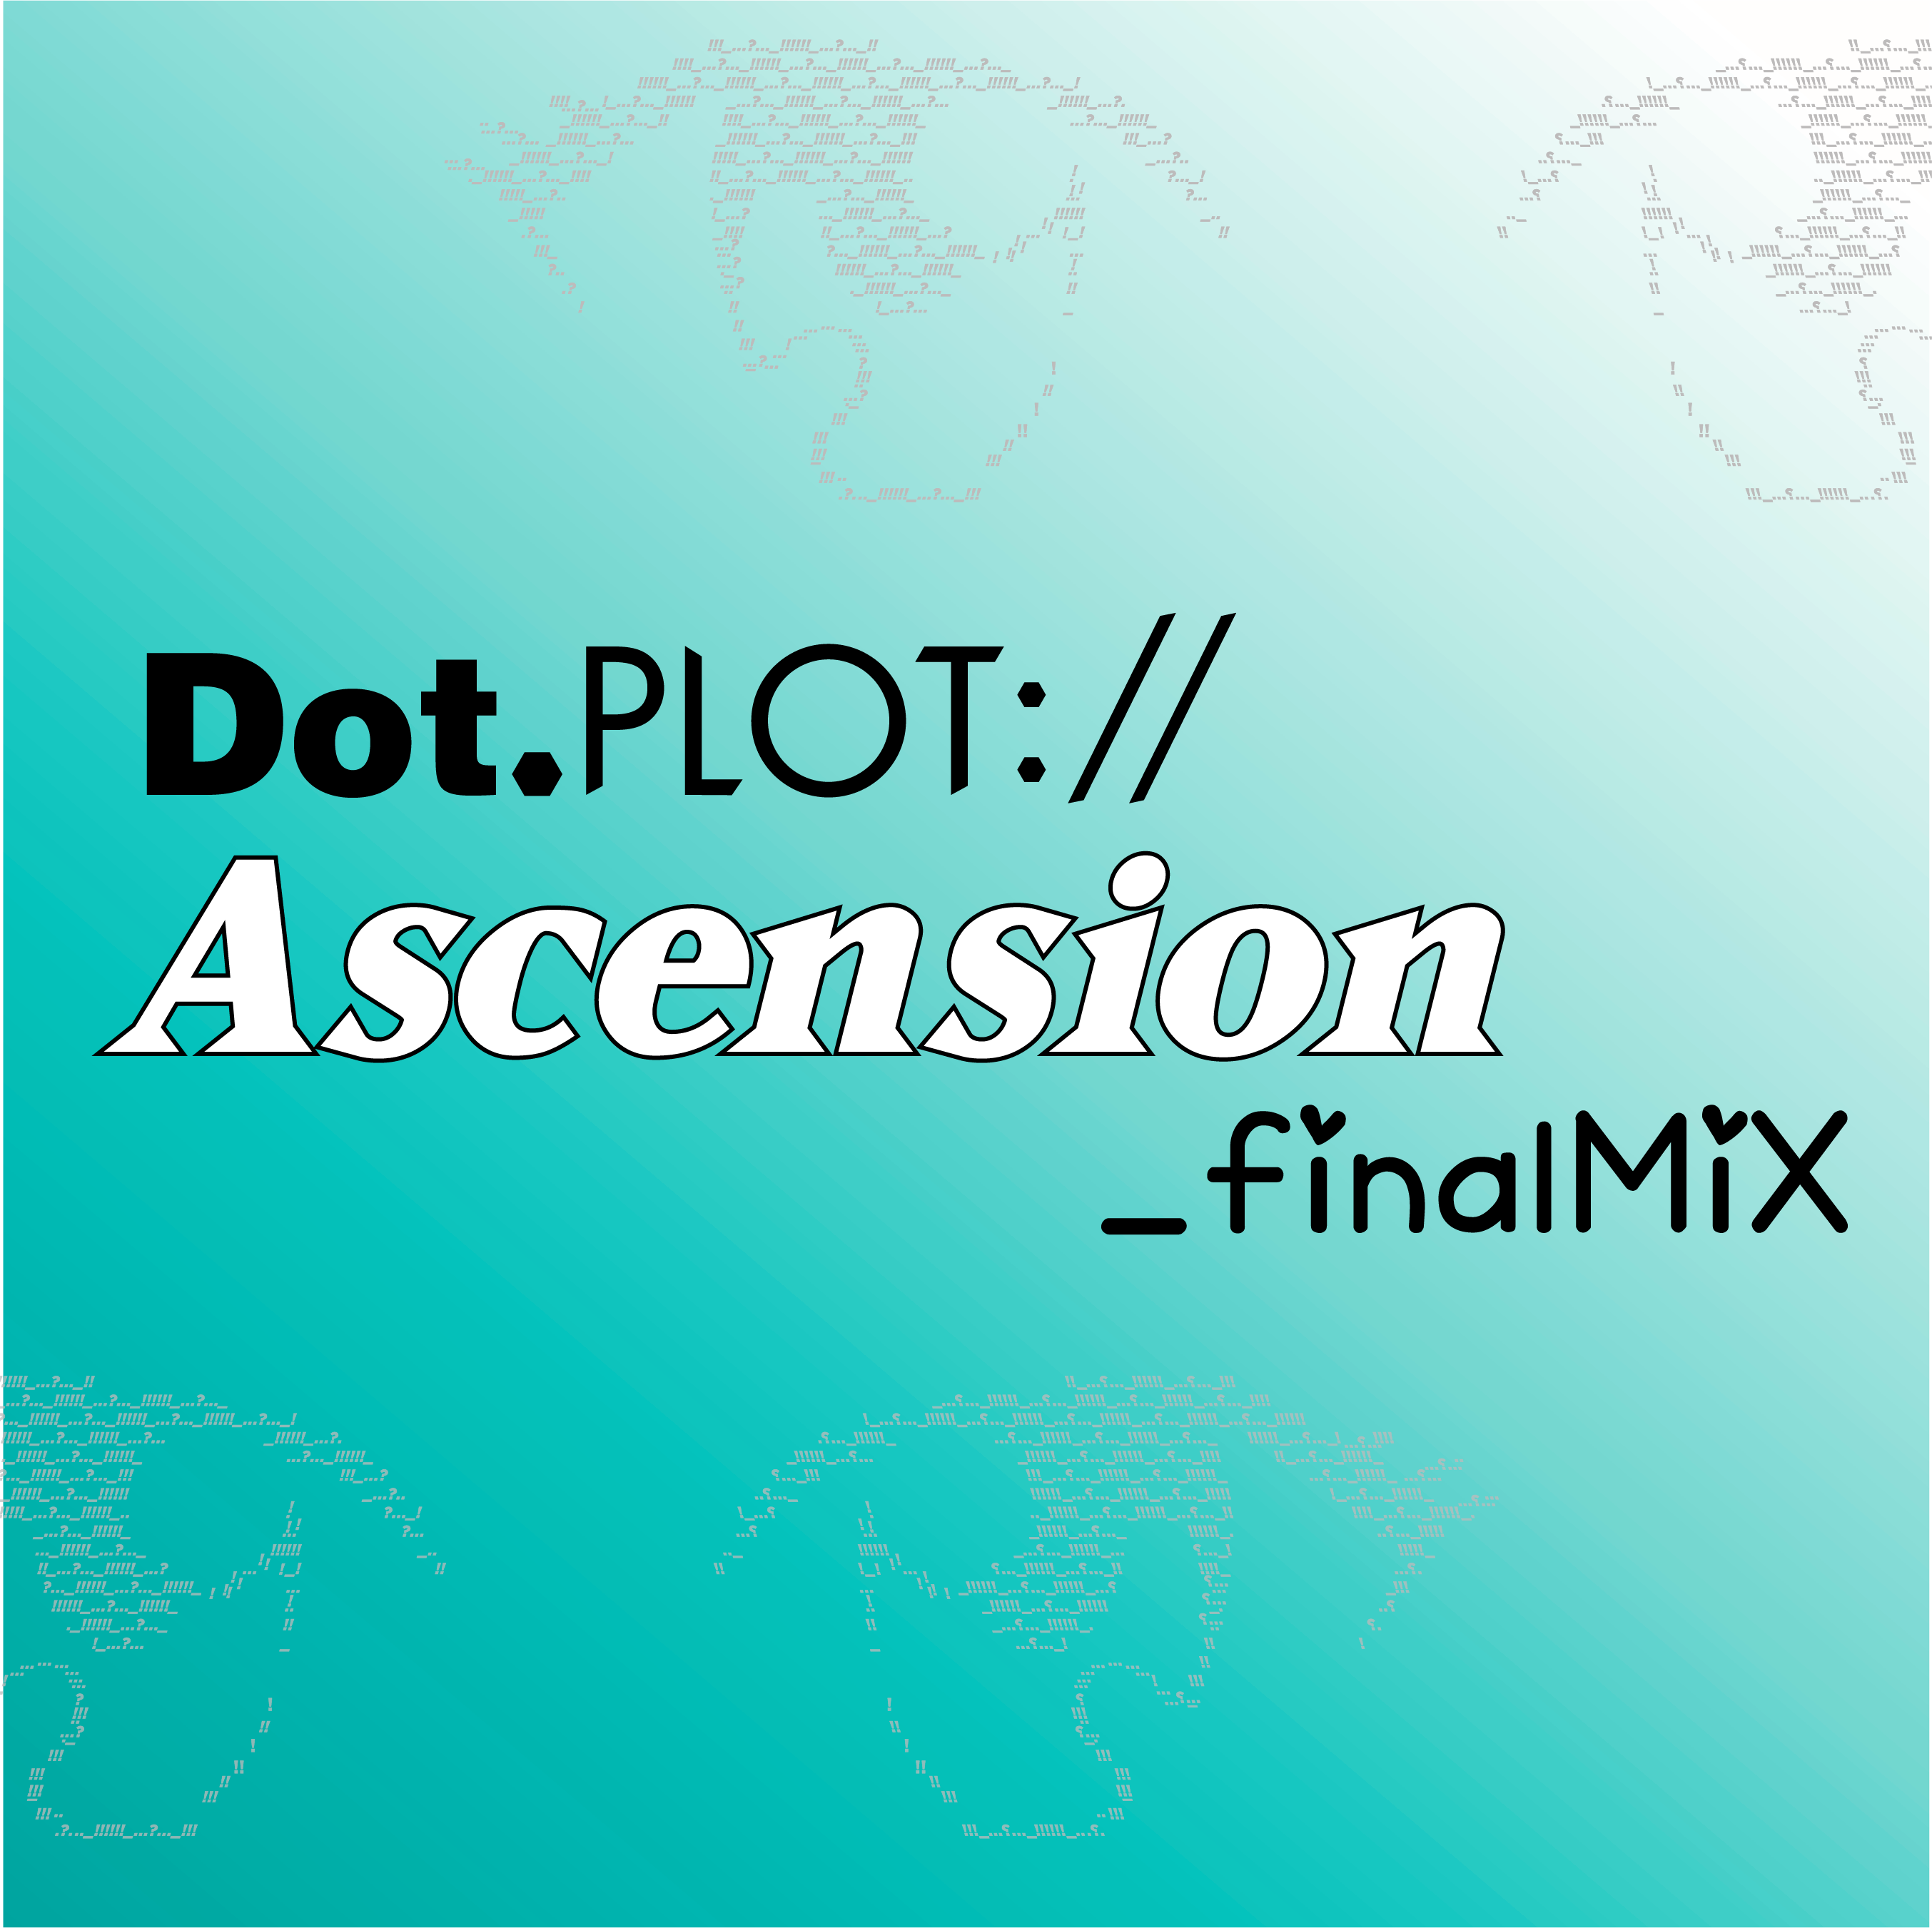 Dot.plot://Ascension_finalMix: NEW_year; NEW_yokio; SAME_boruto'sDAD+WINTER SEASON PREVIEW